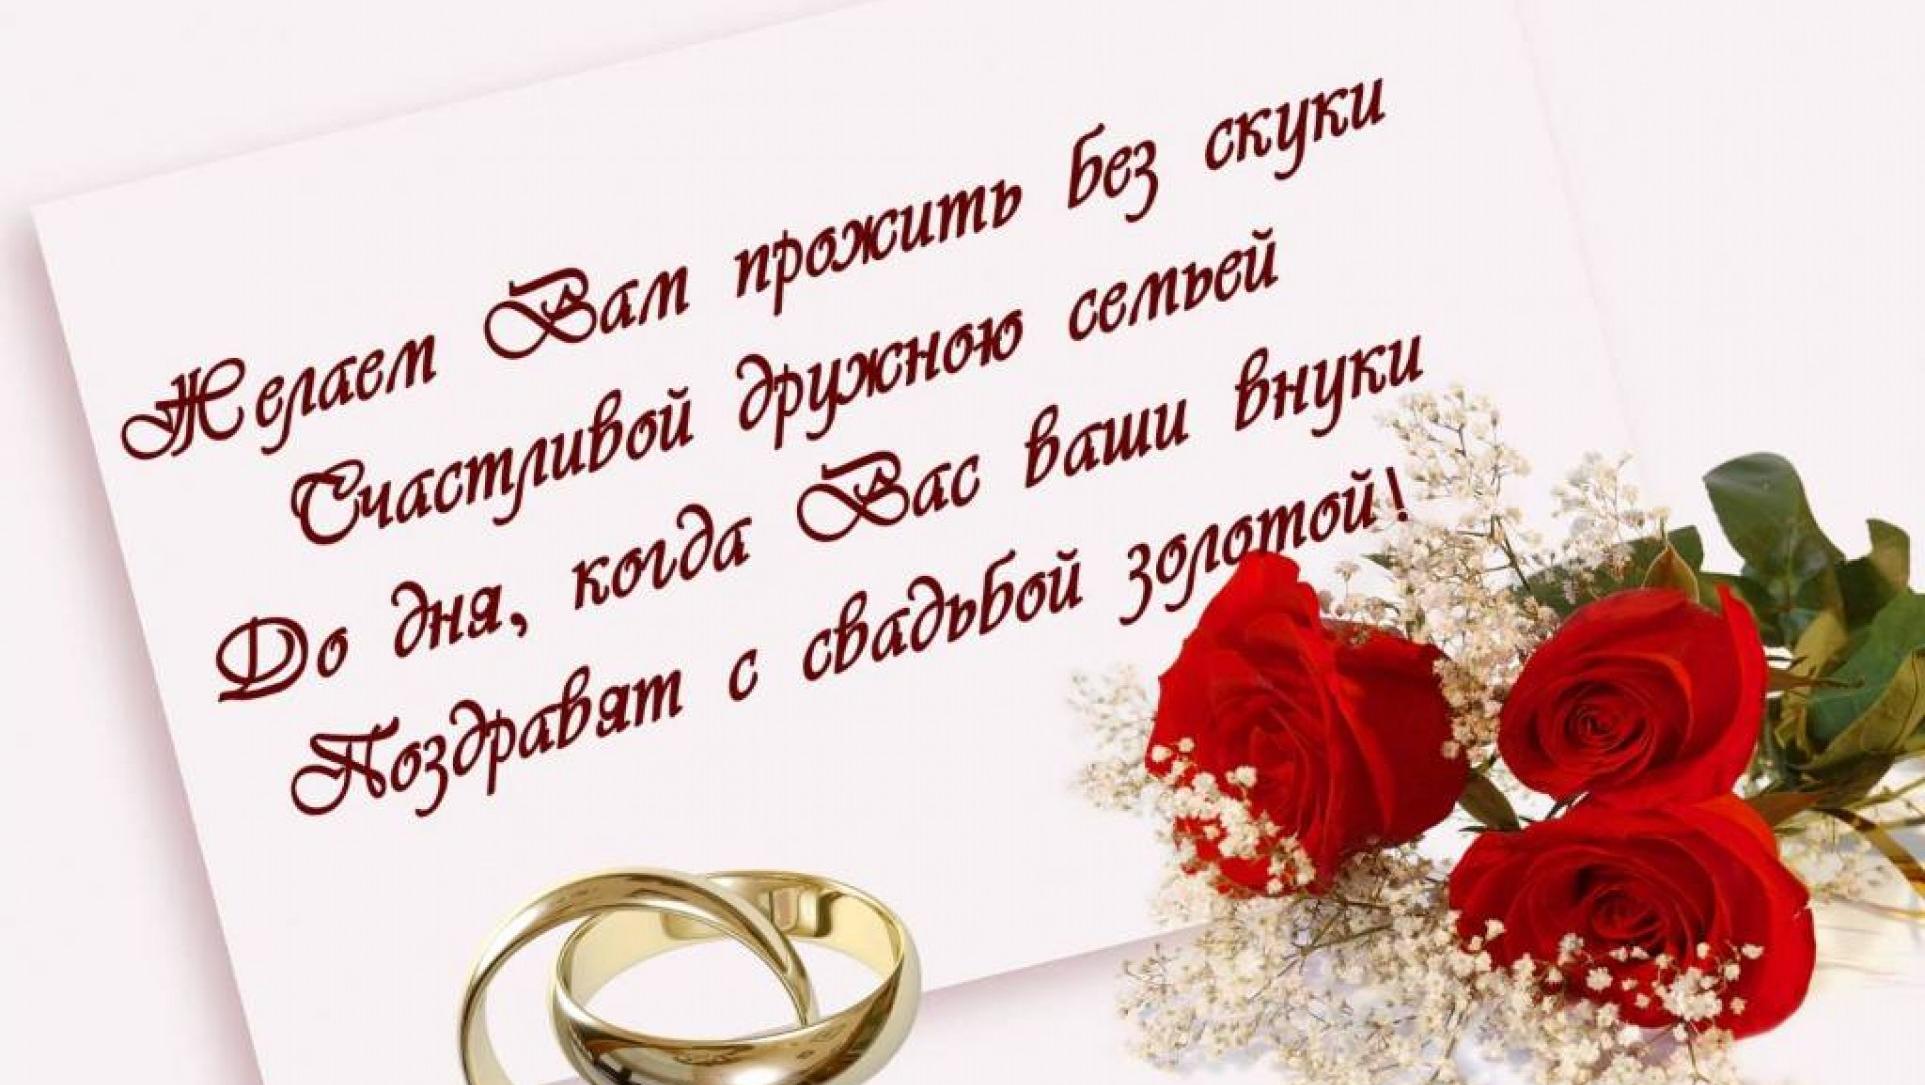 Поздравляю со знаменательным днем. Поздравление сднём свадьбы. Поздравления с днём свадьбы красивые. Месяц со дня свадьбы поздравления. Поздравления со свадьбой красивые.